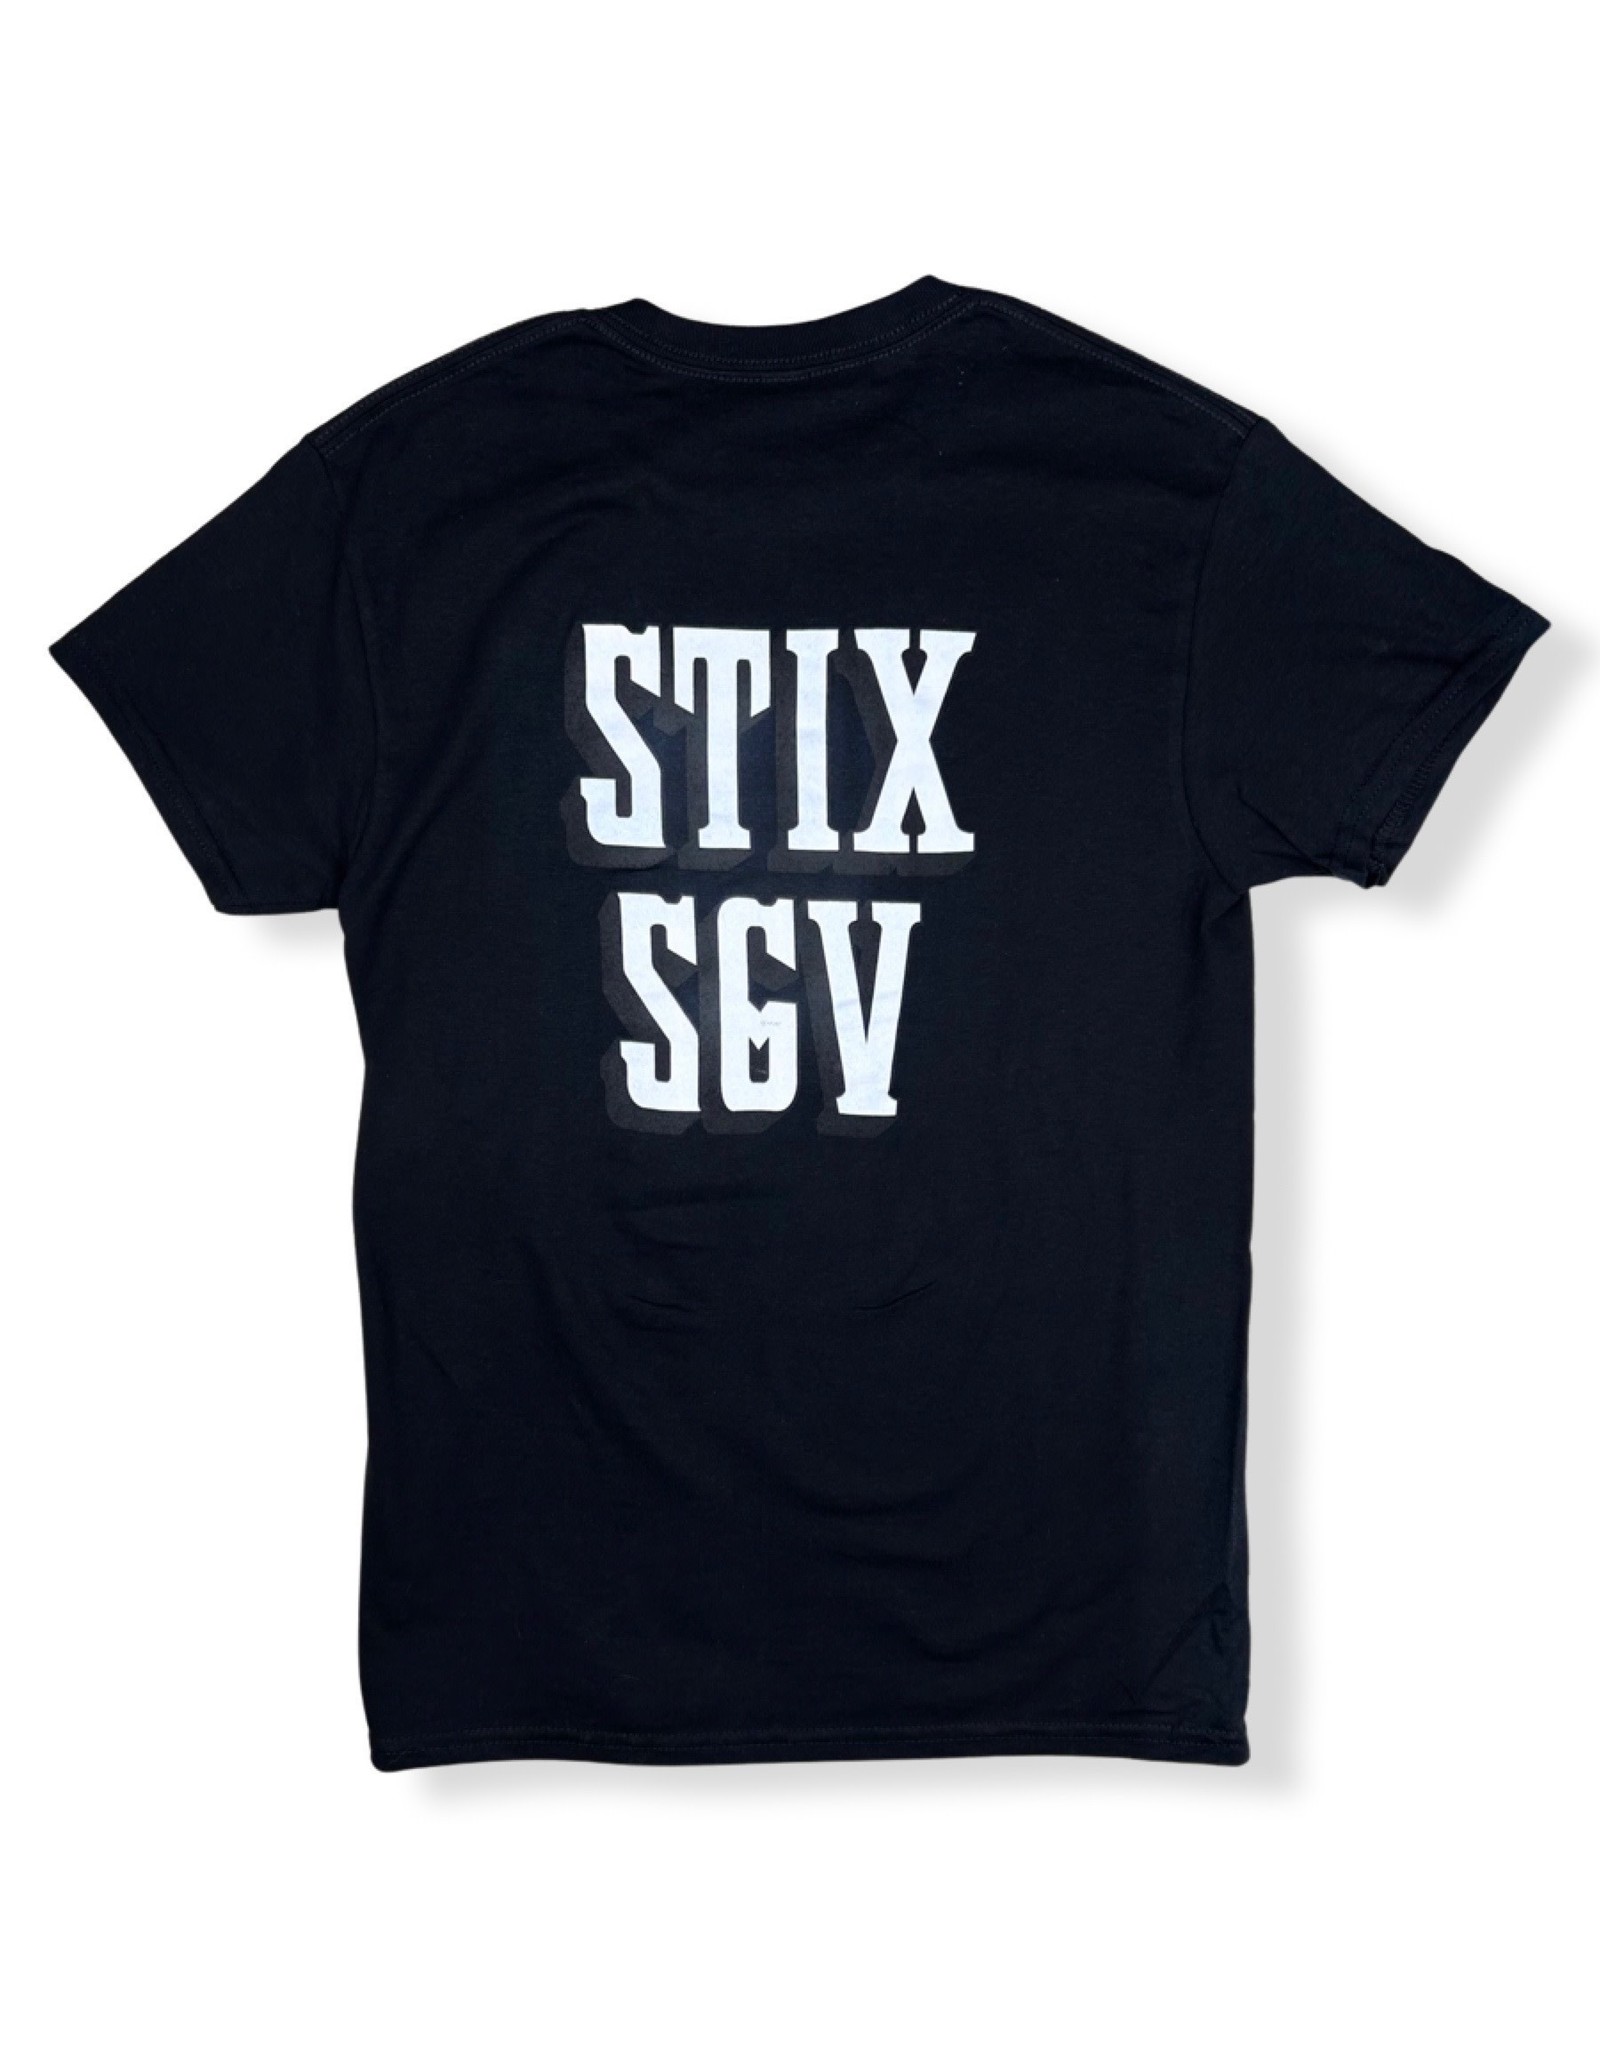 Stix SGV Stix Tee Original SGV S/S (Black/White)